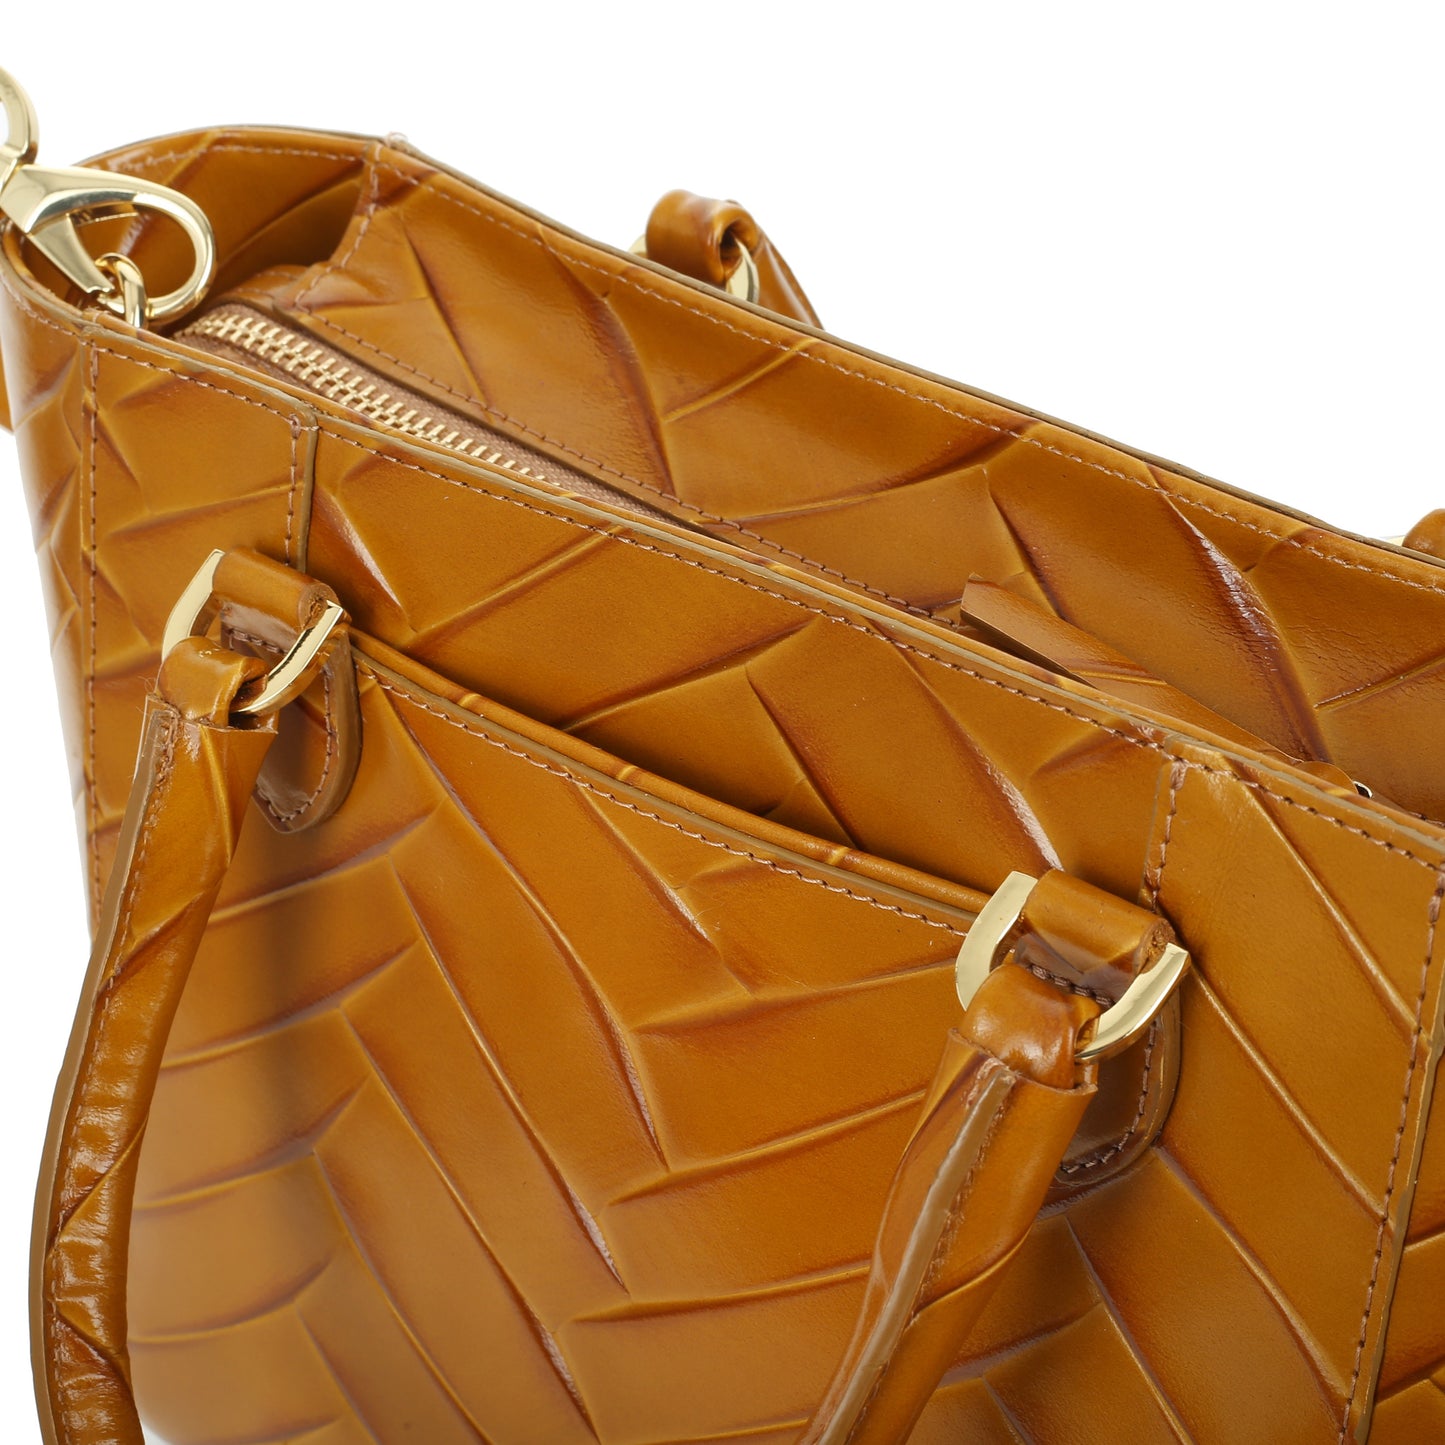 STAMPIA S HONEY women's leather handbag